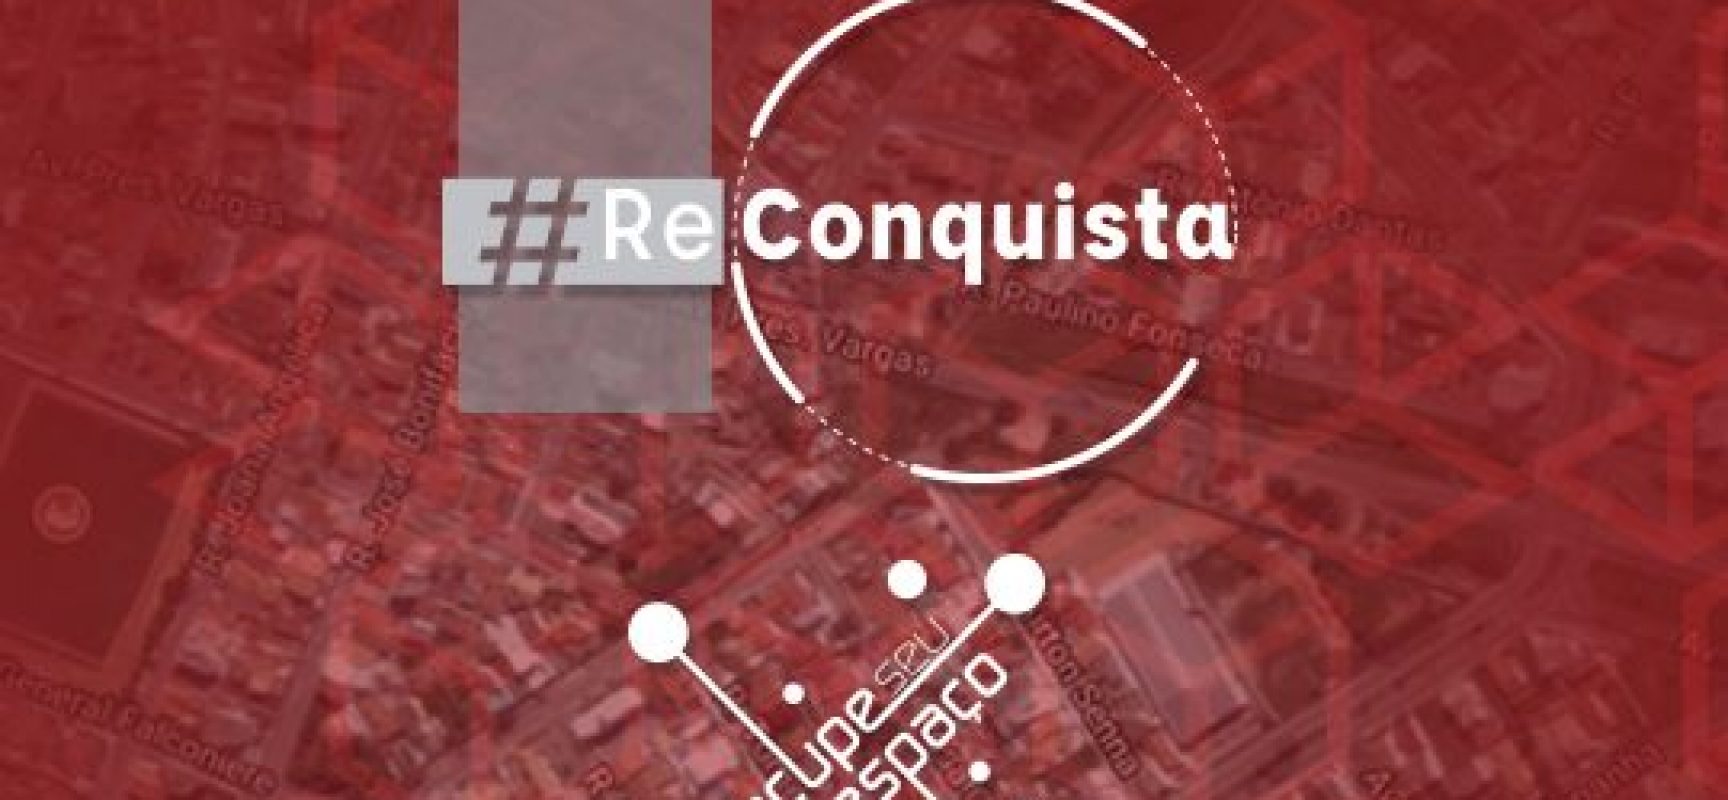 SecultBA divulga resultado da convocatória do Ocupe Seu Espaço edição #ReConquista